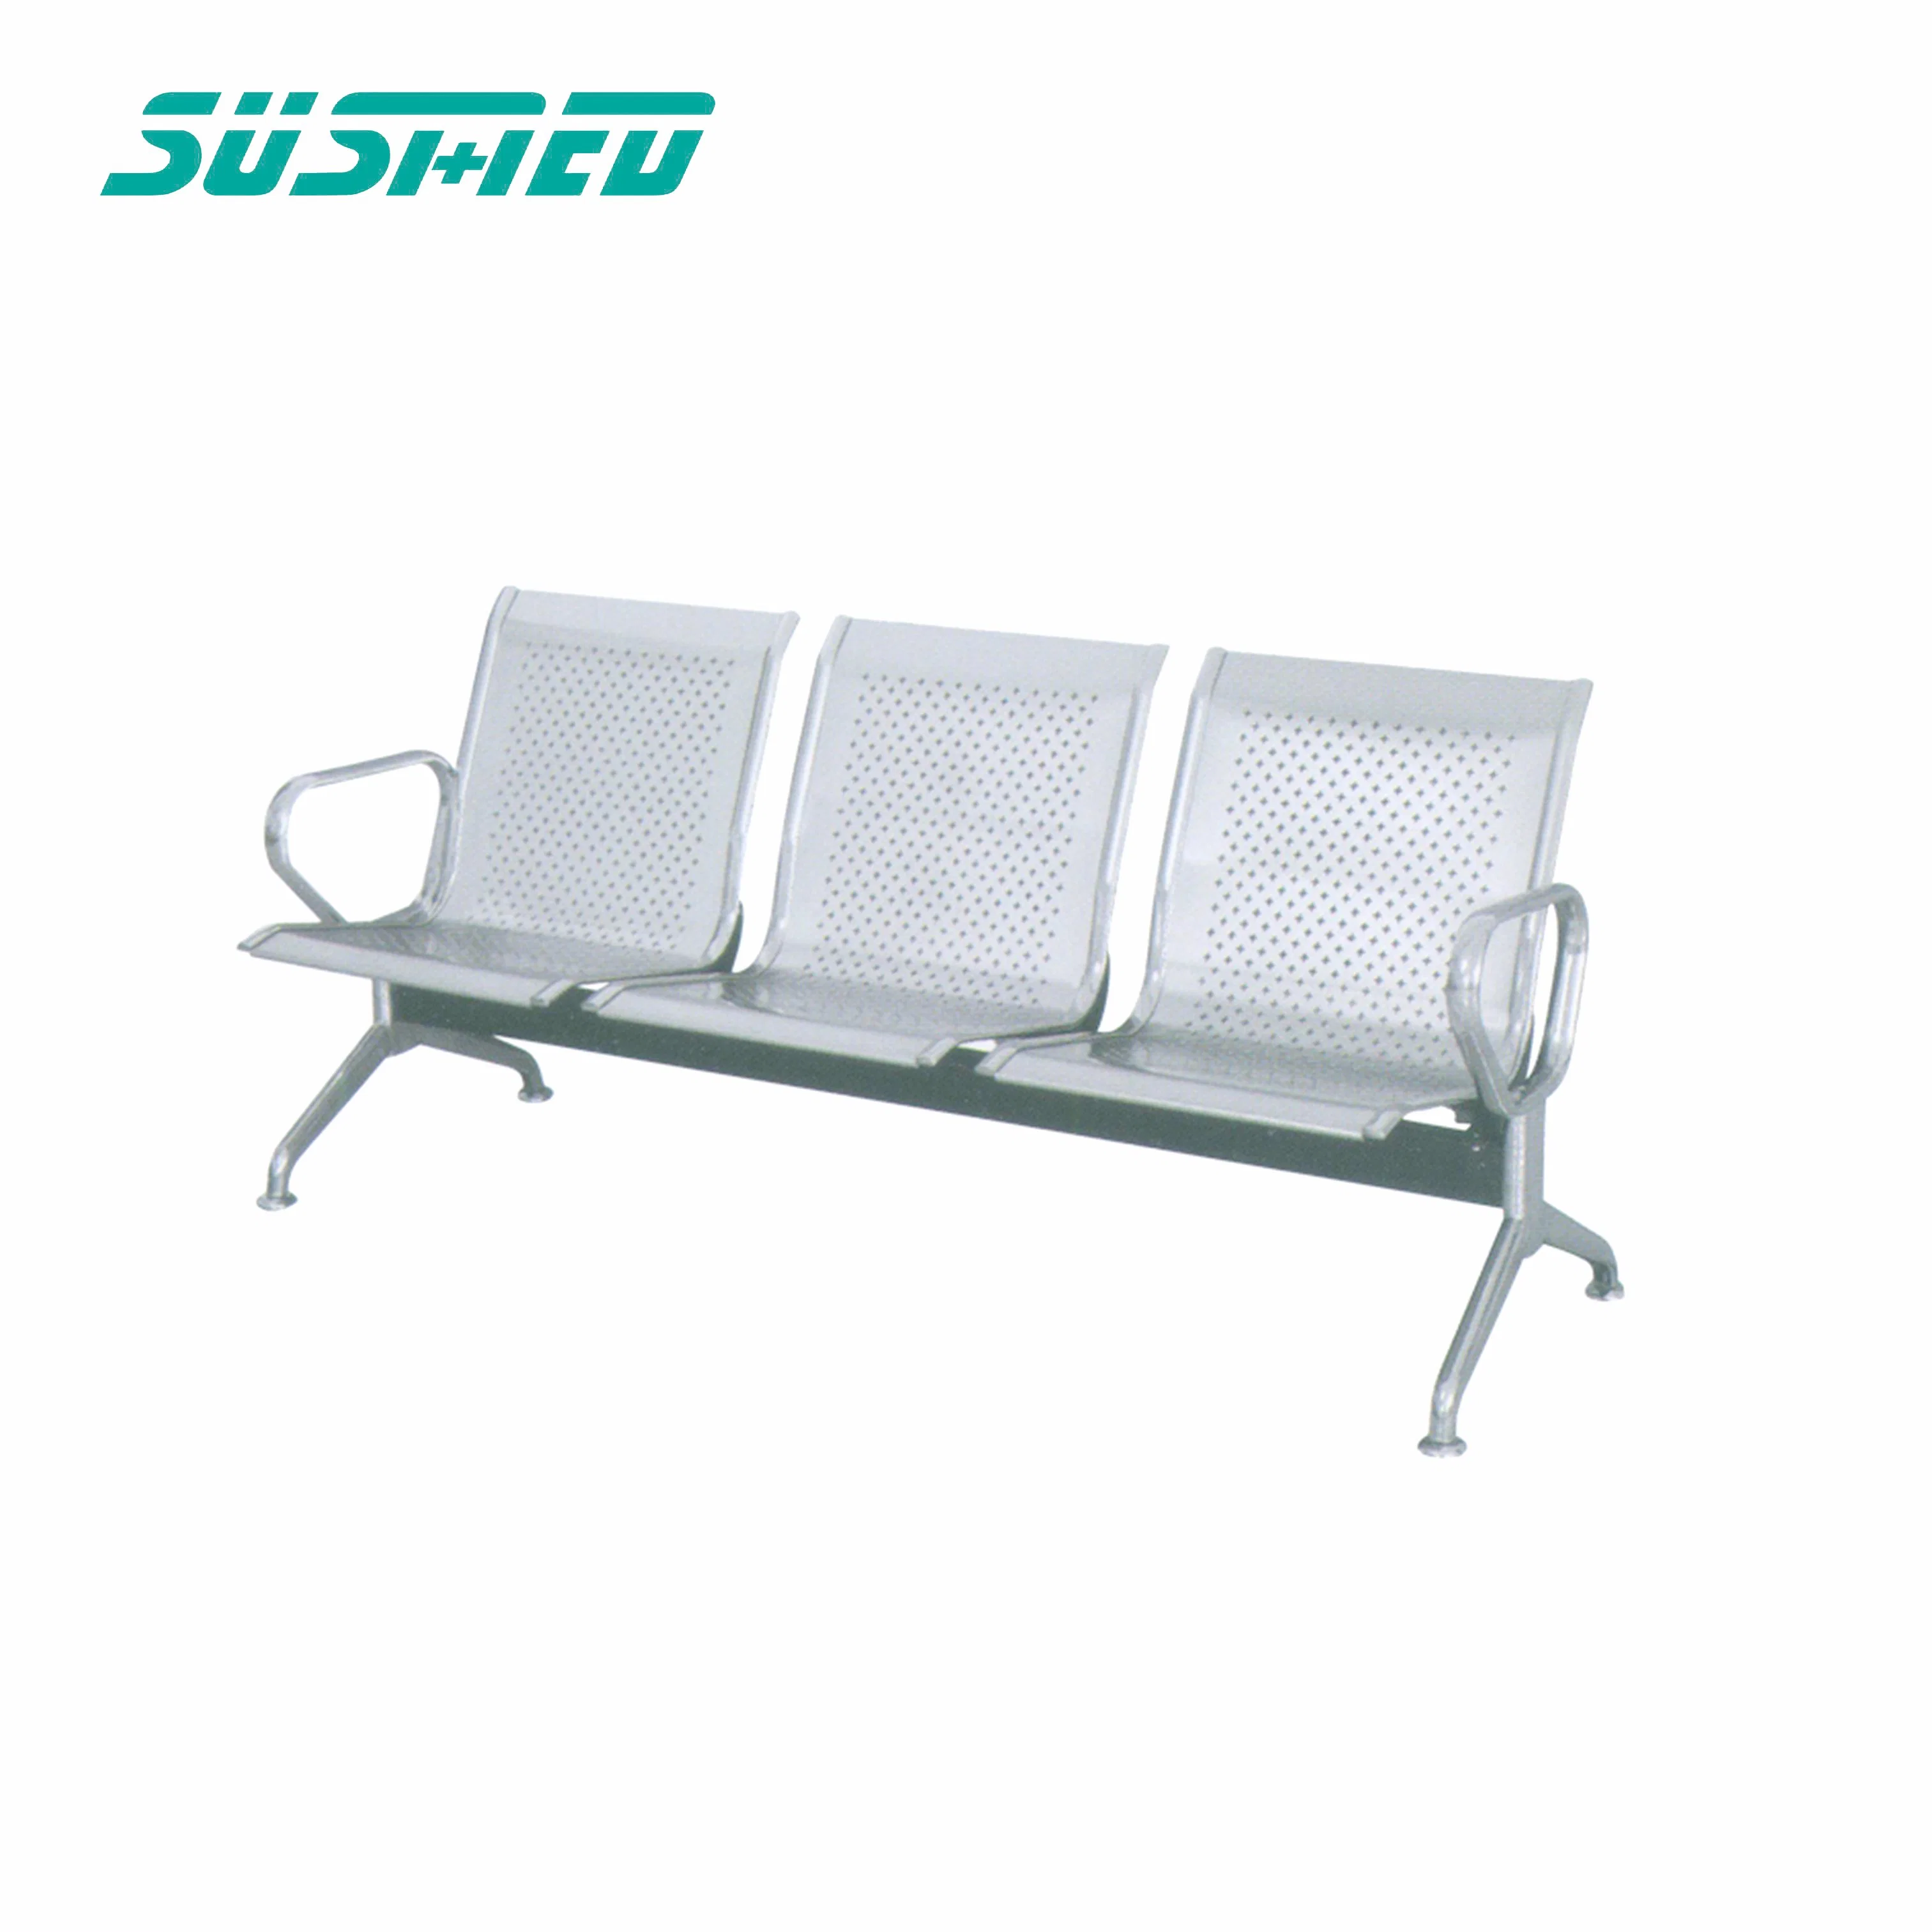 Sitzbank Ohne Arm Steel Hospital Wartering Chair Public 3-Sitzer Flughafenstuhl